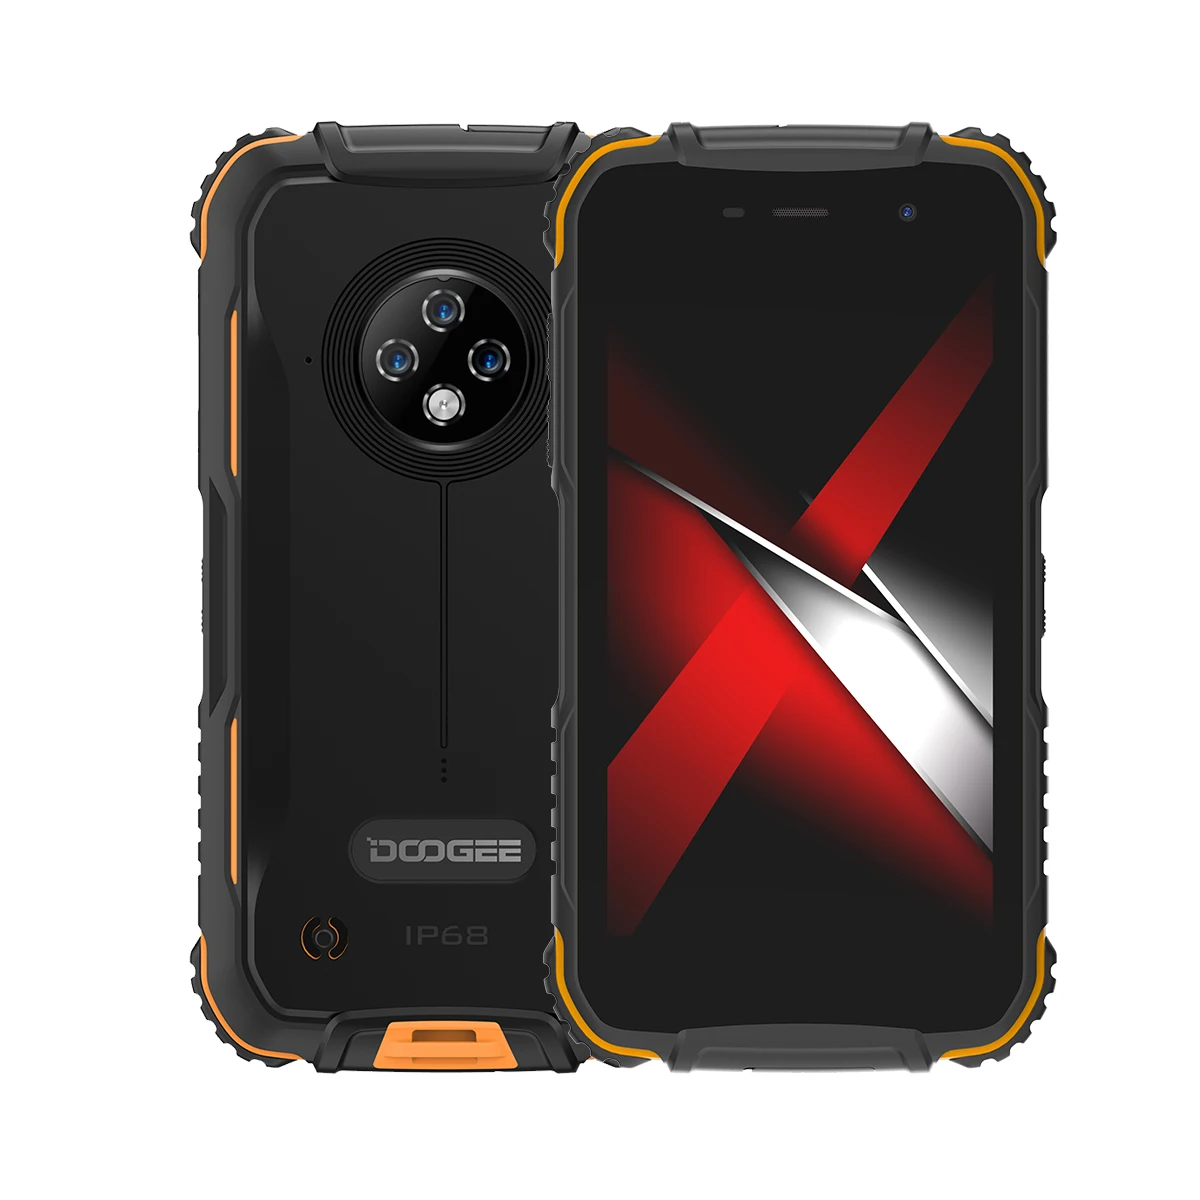 

Global Original S35 Explosion-proof 3GB+16GB 5.0 inch Waterproof Mobile Phone, Black / red/orange